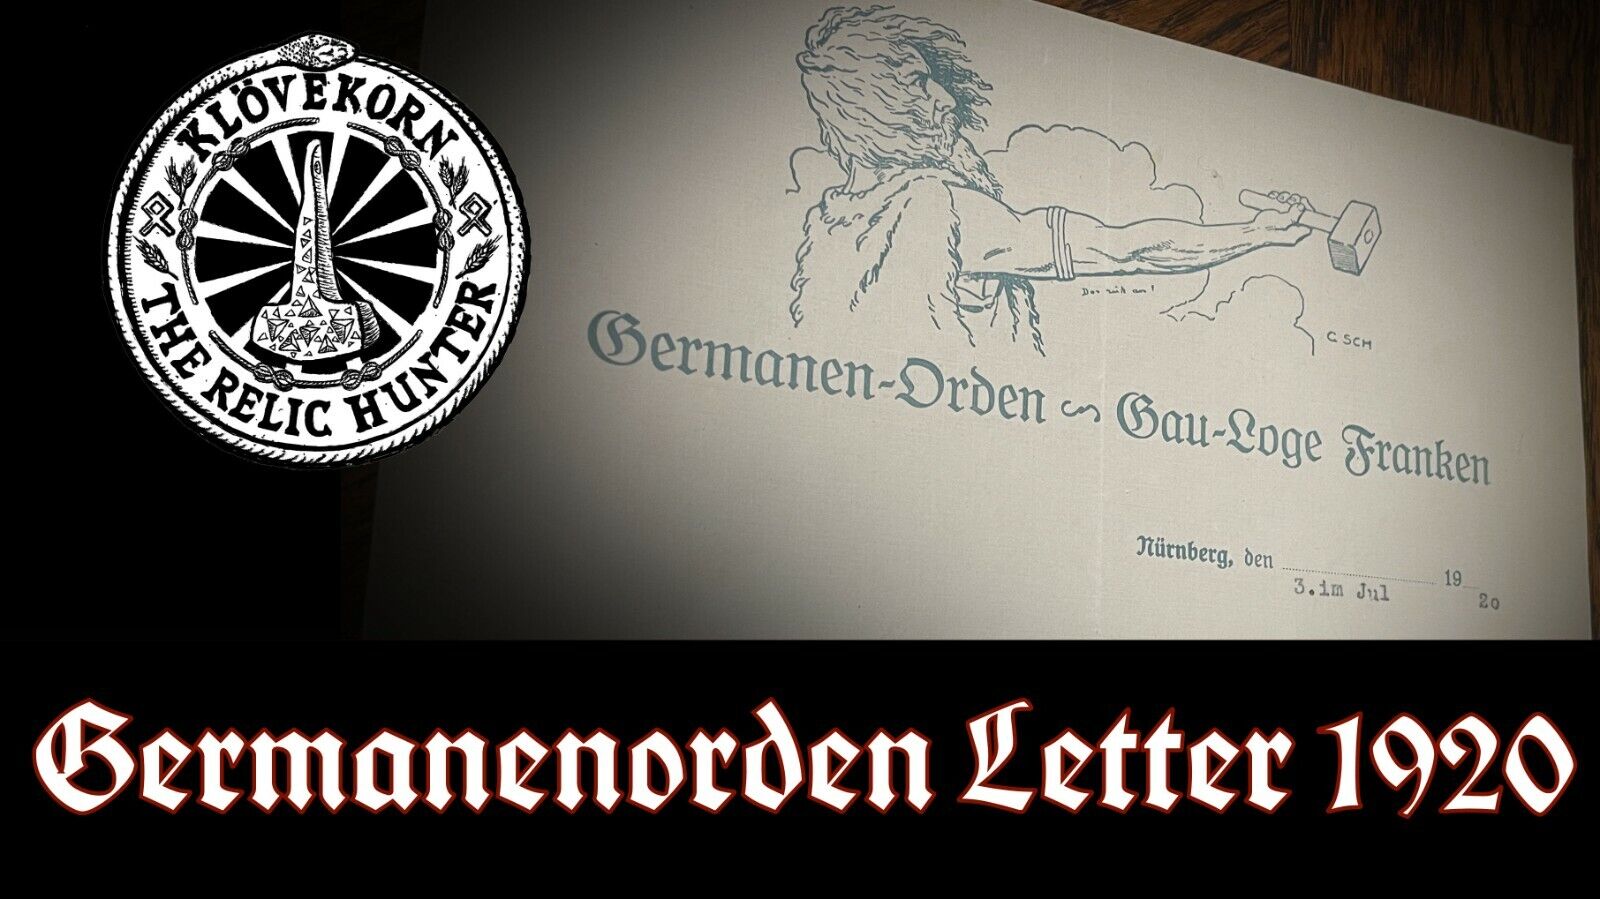 Germanenorden Thule Letter 1920